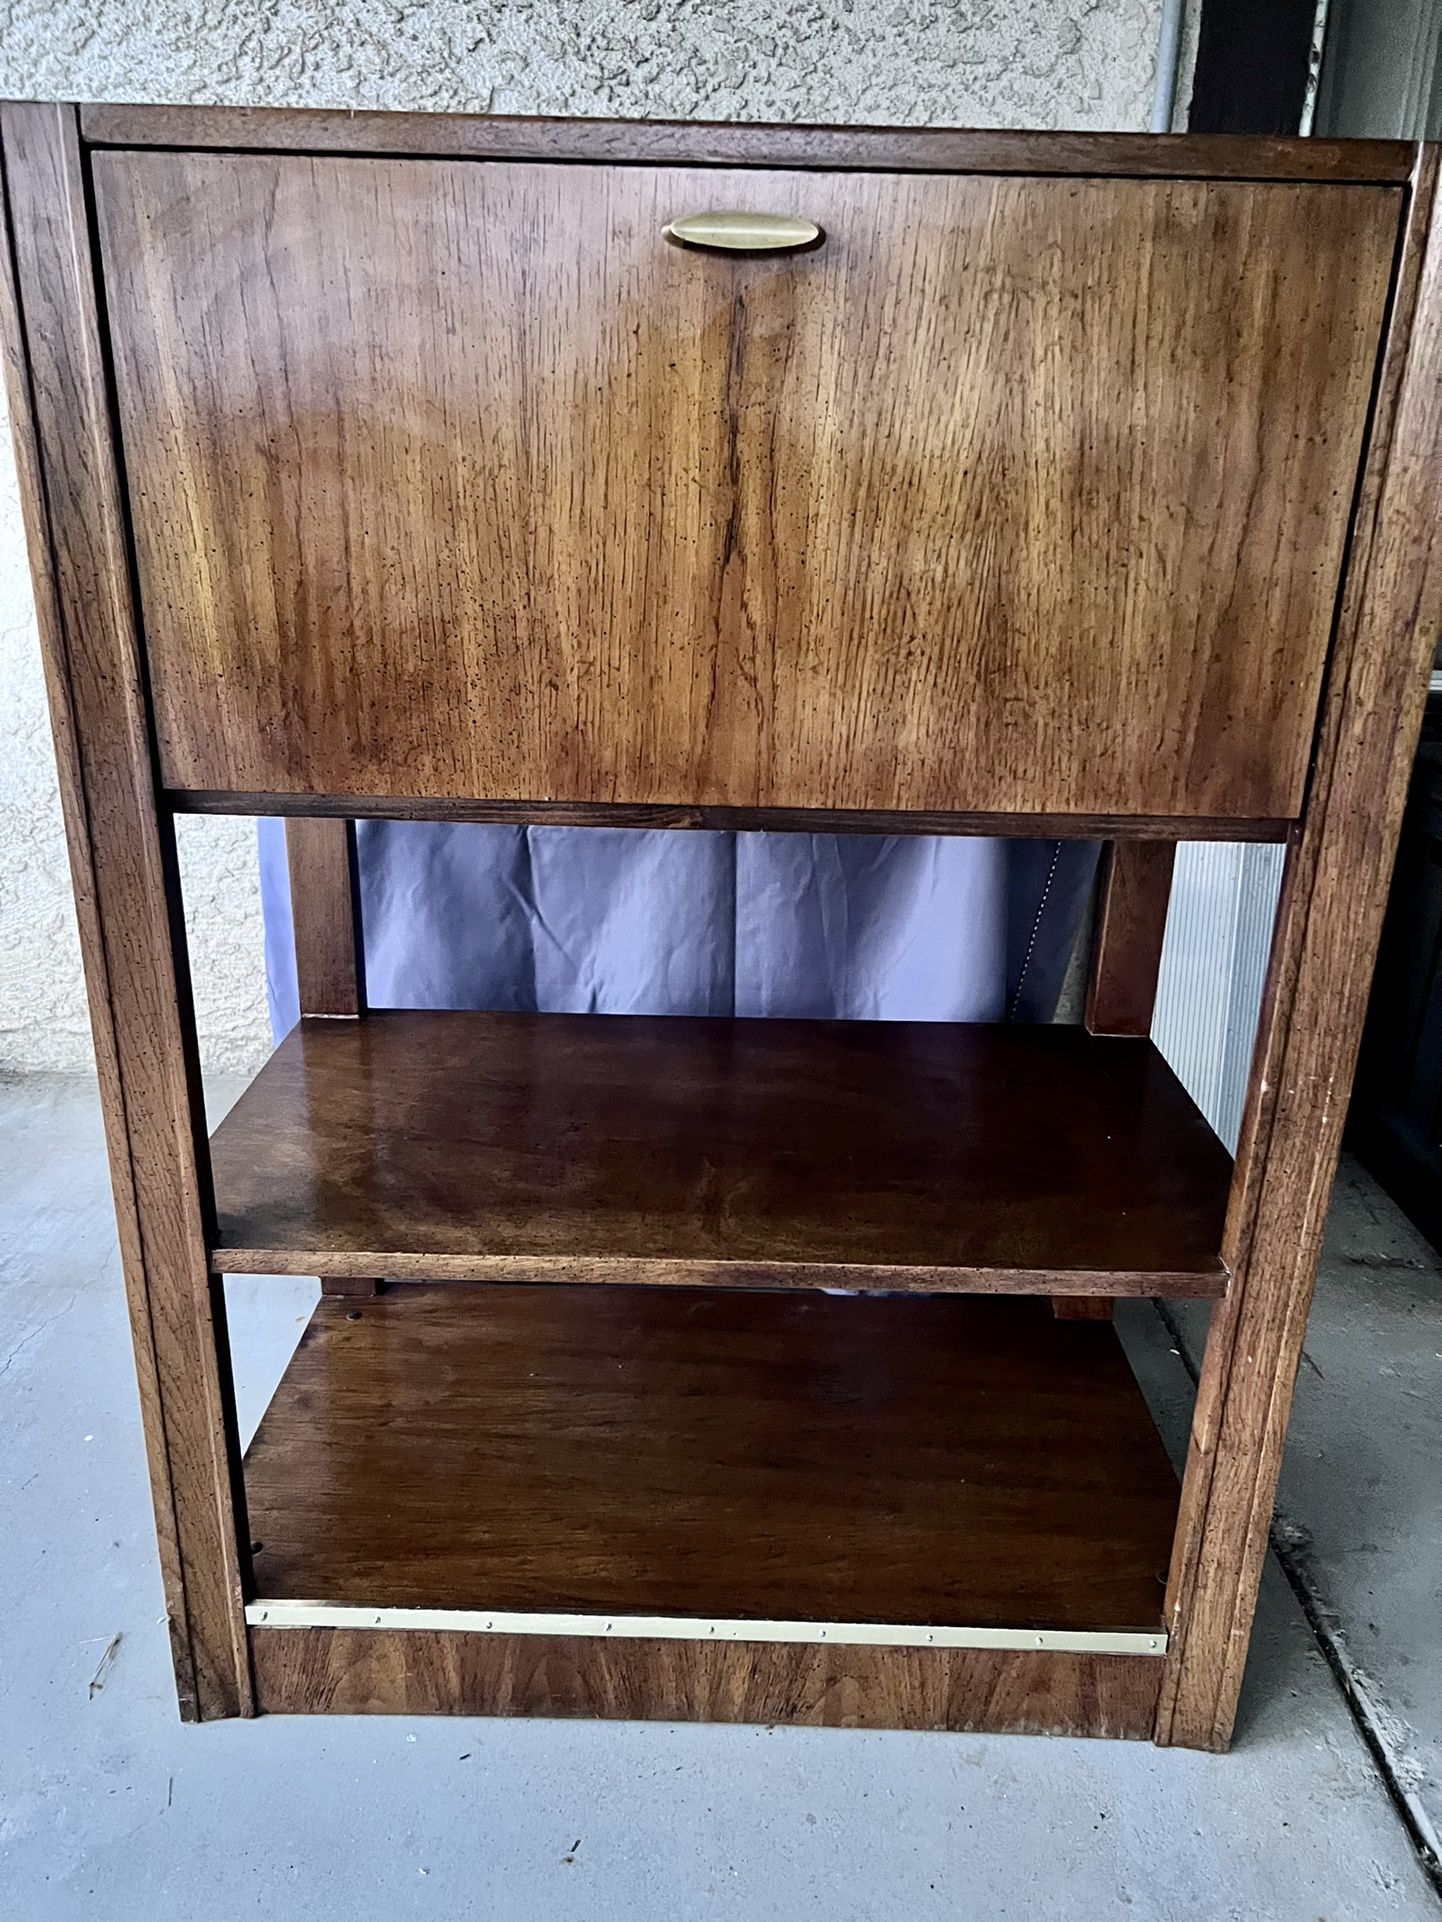 Cabinet/Book case/Shelf